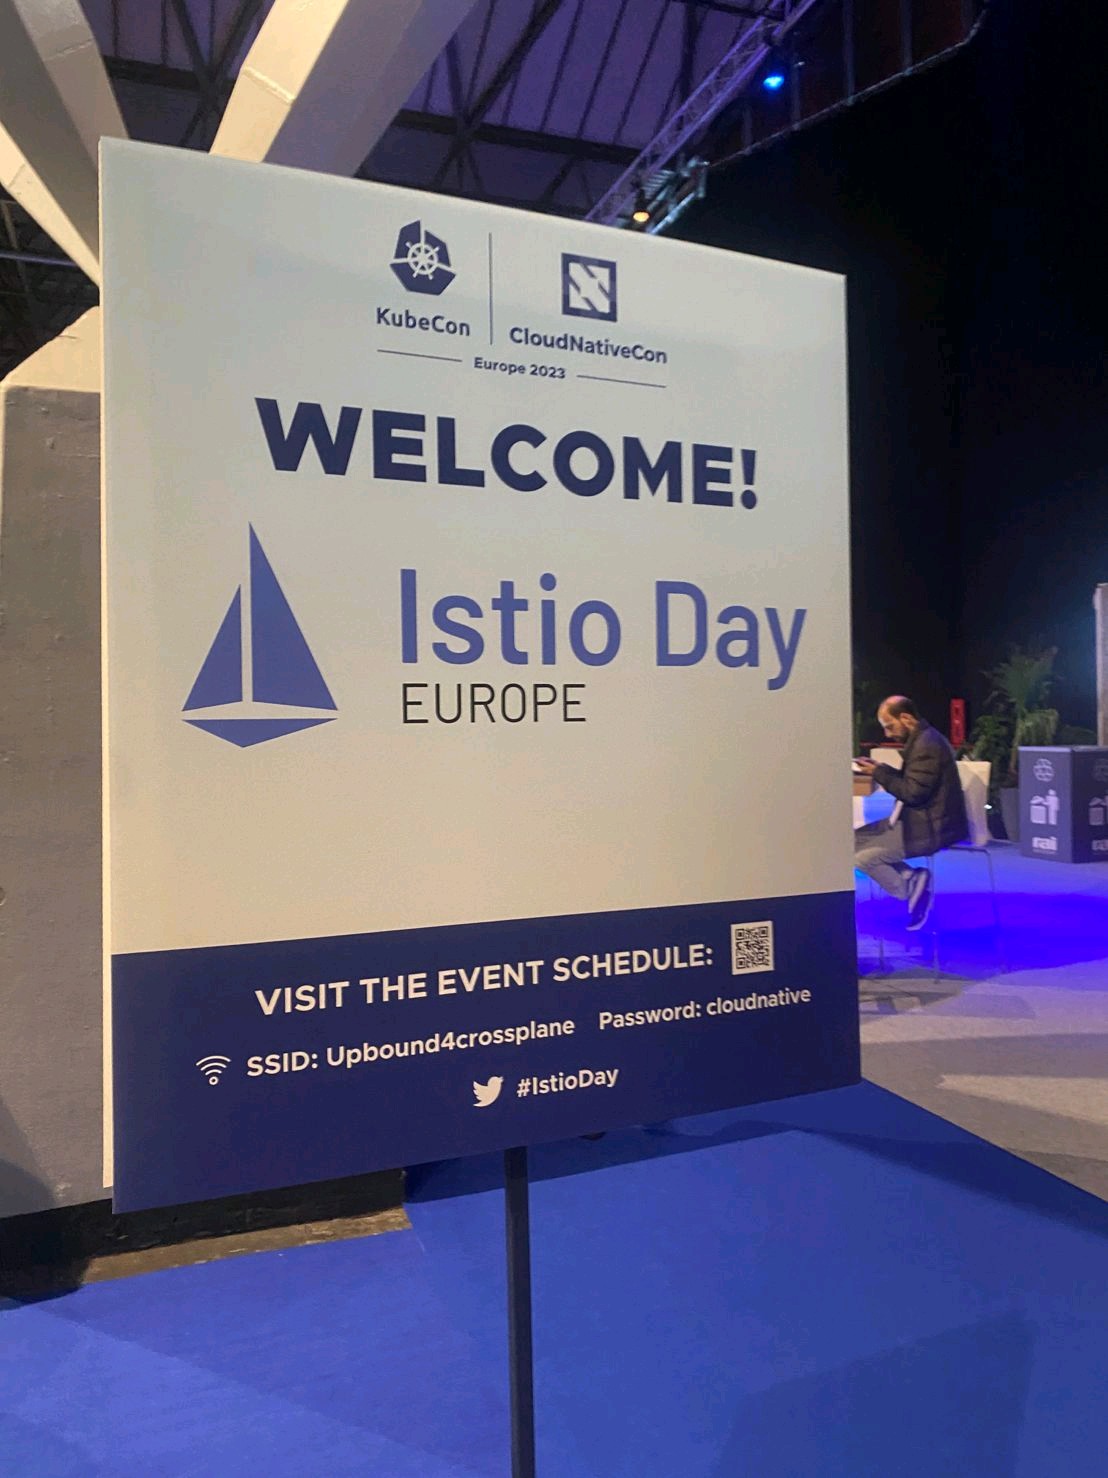 欢迎来到 Istio Day 2023 年欧洲站